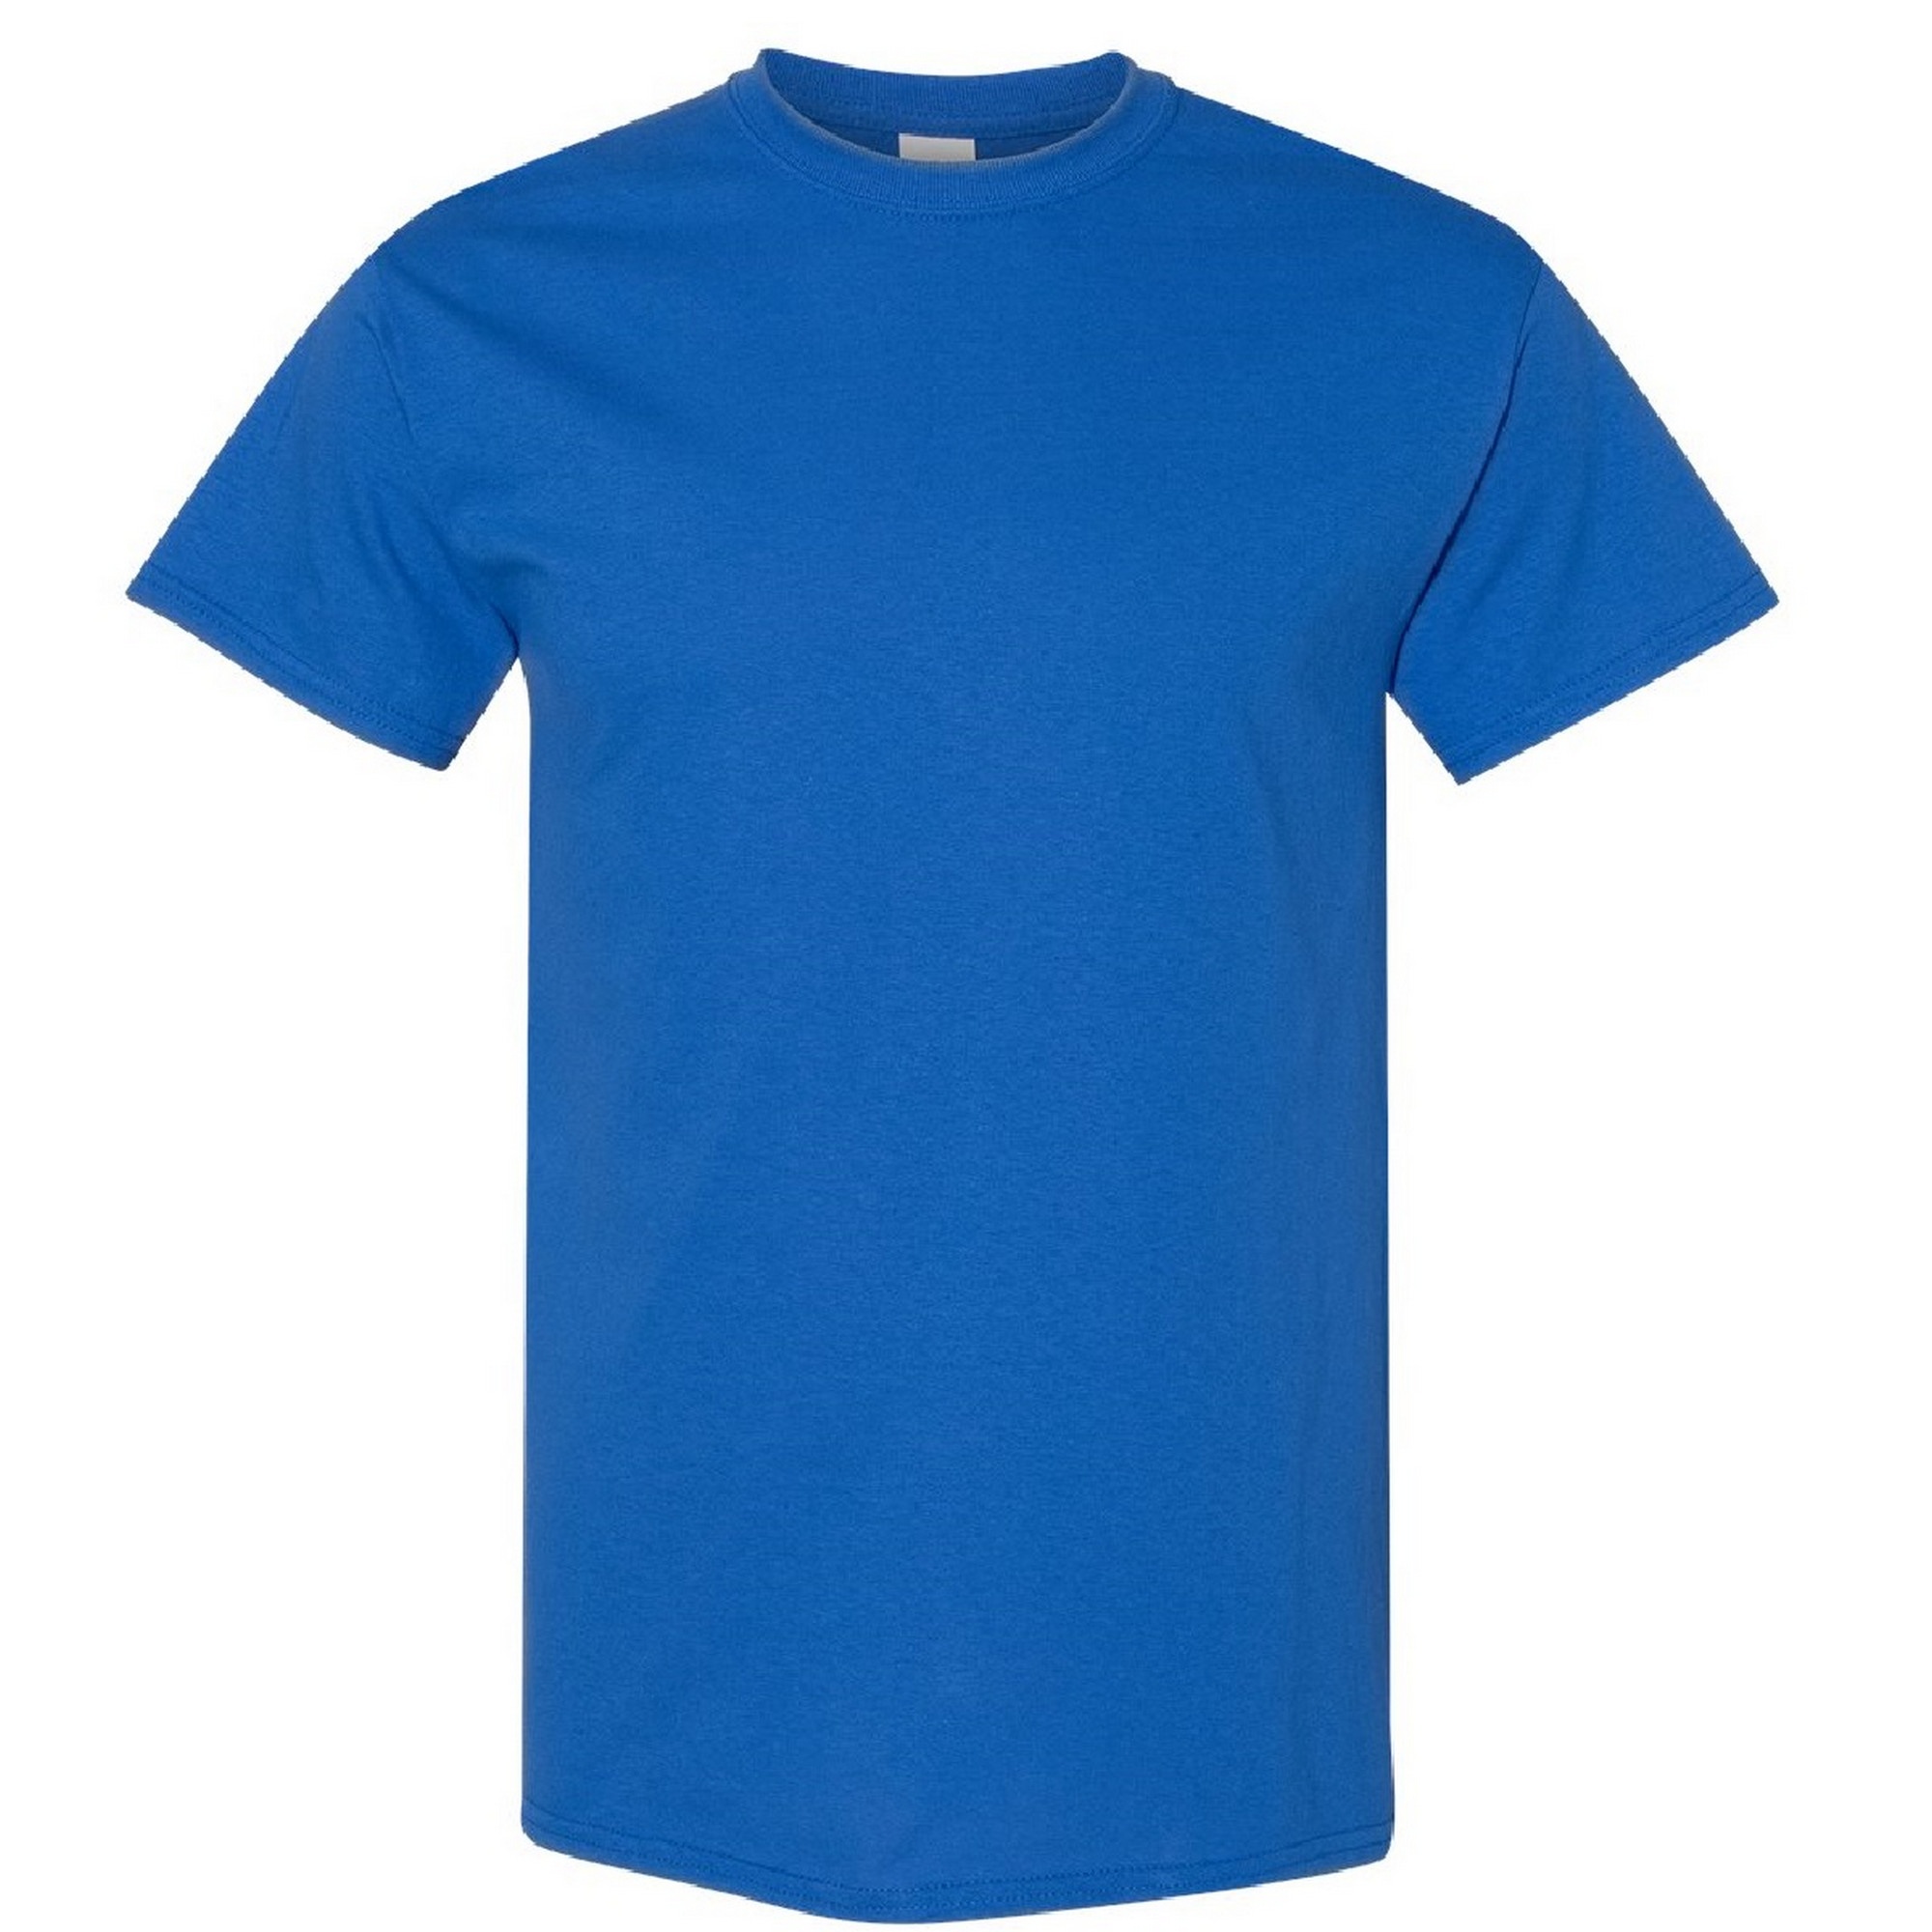 Camisetas basicas azules